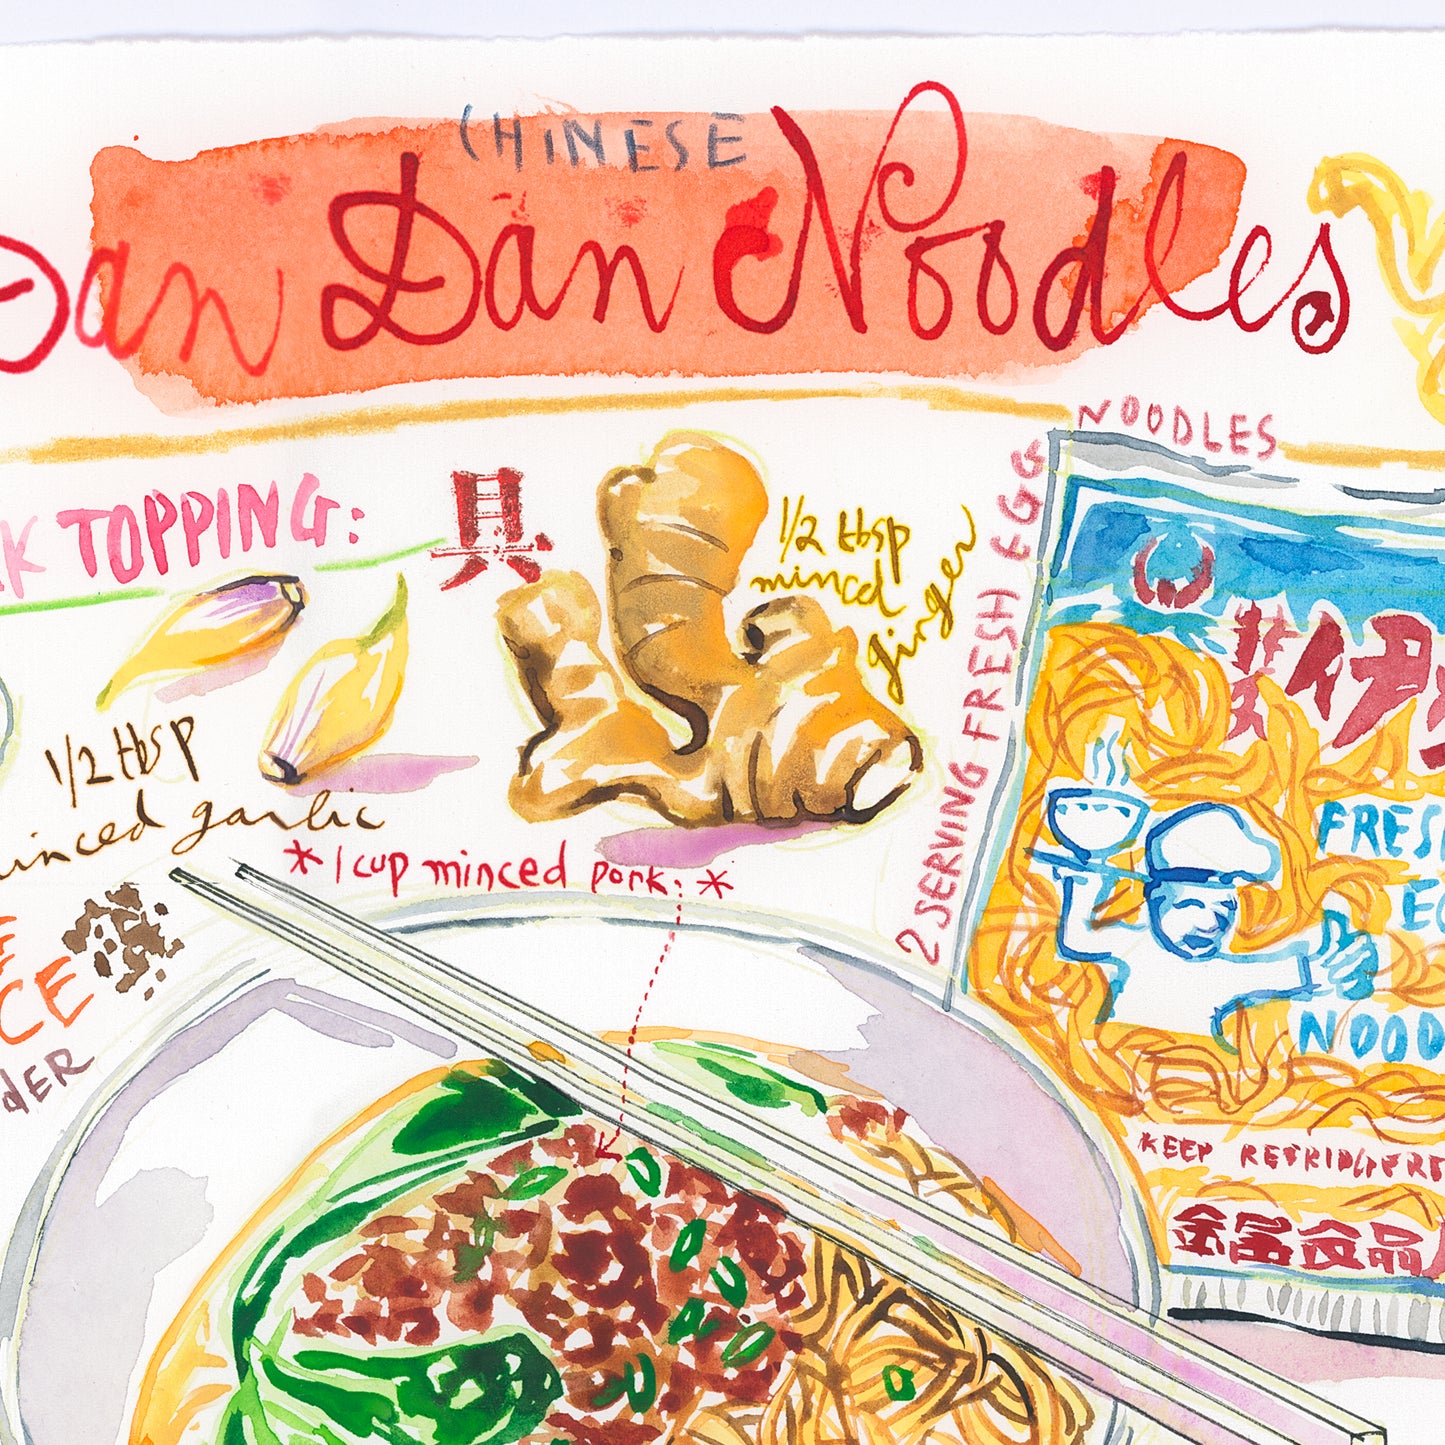 Chinese Dan Dan noodles recipe. Original watercolor painting